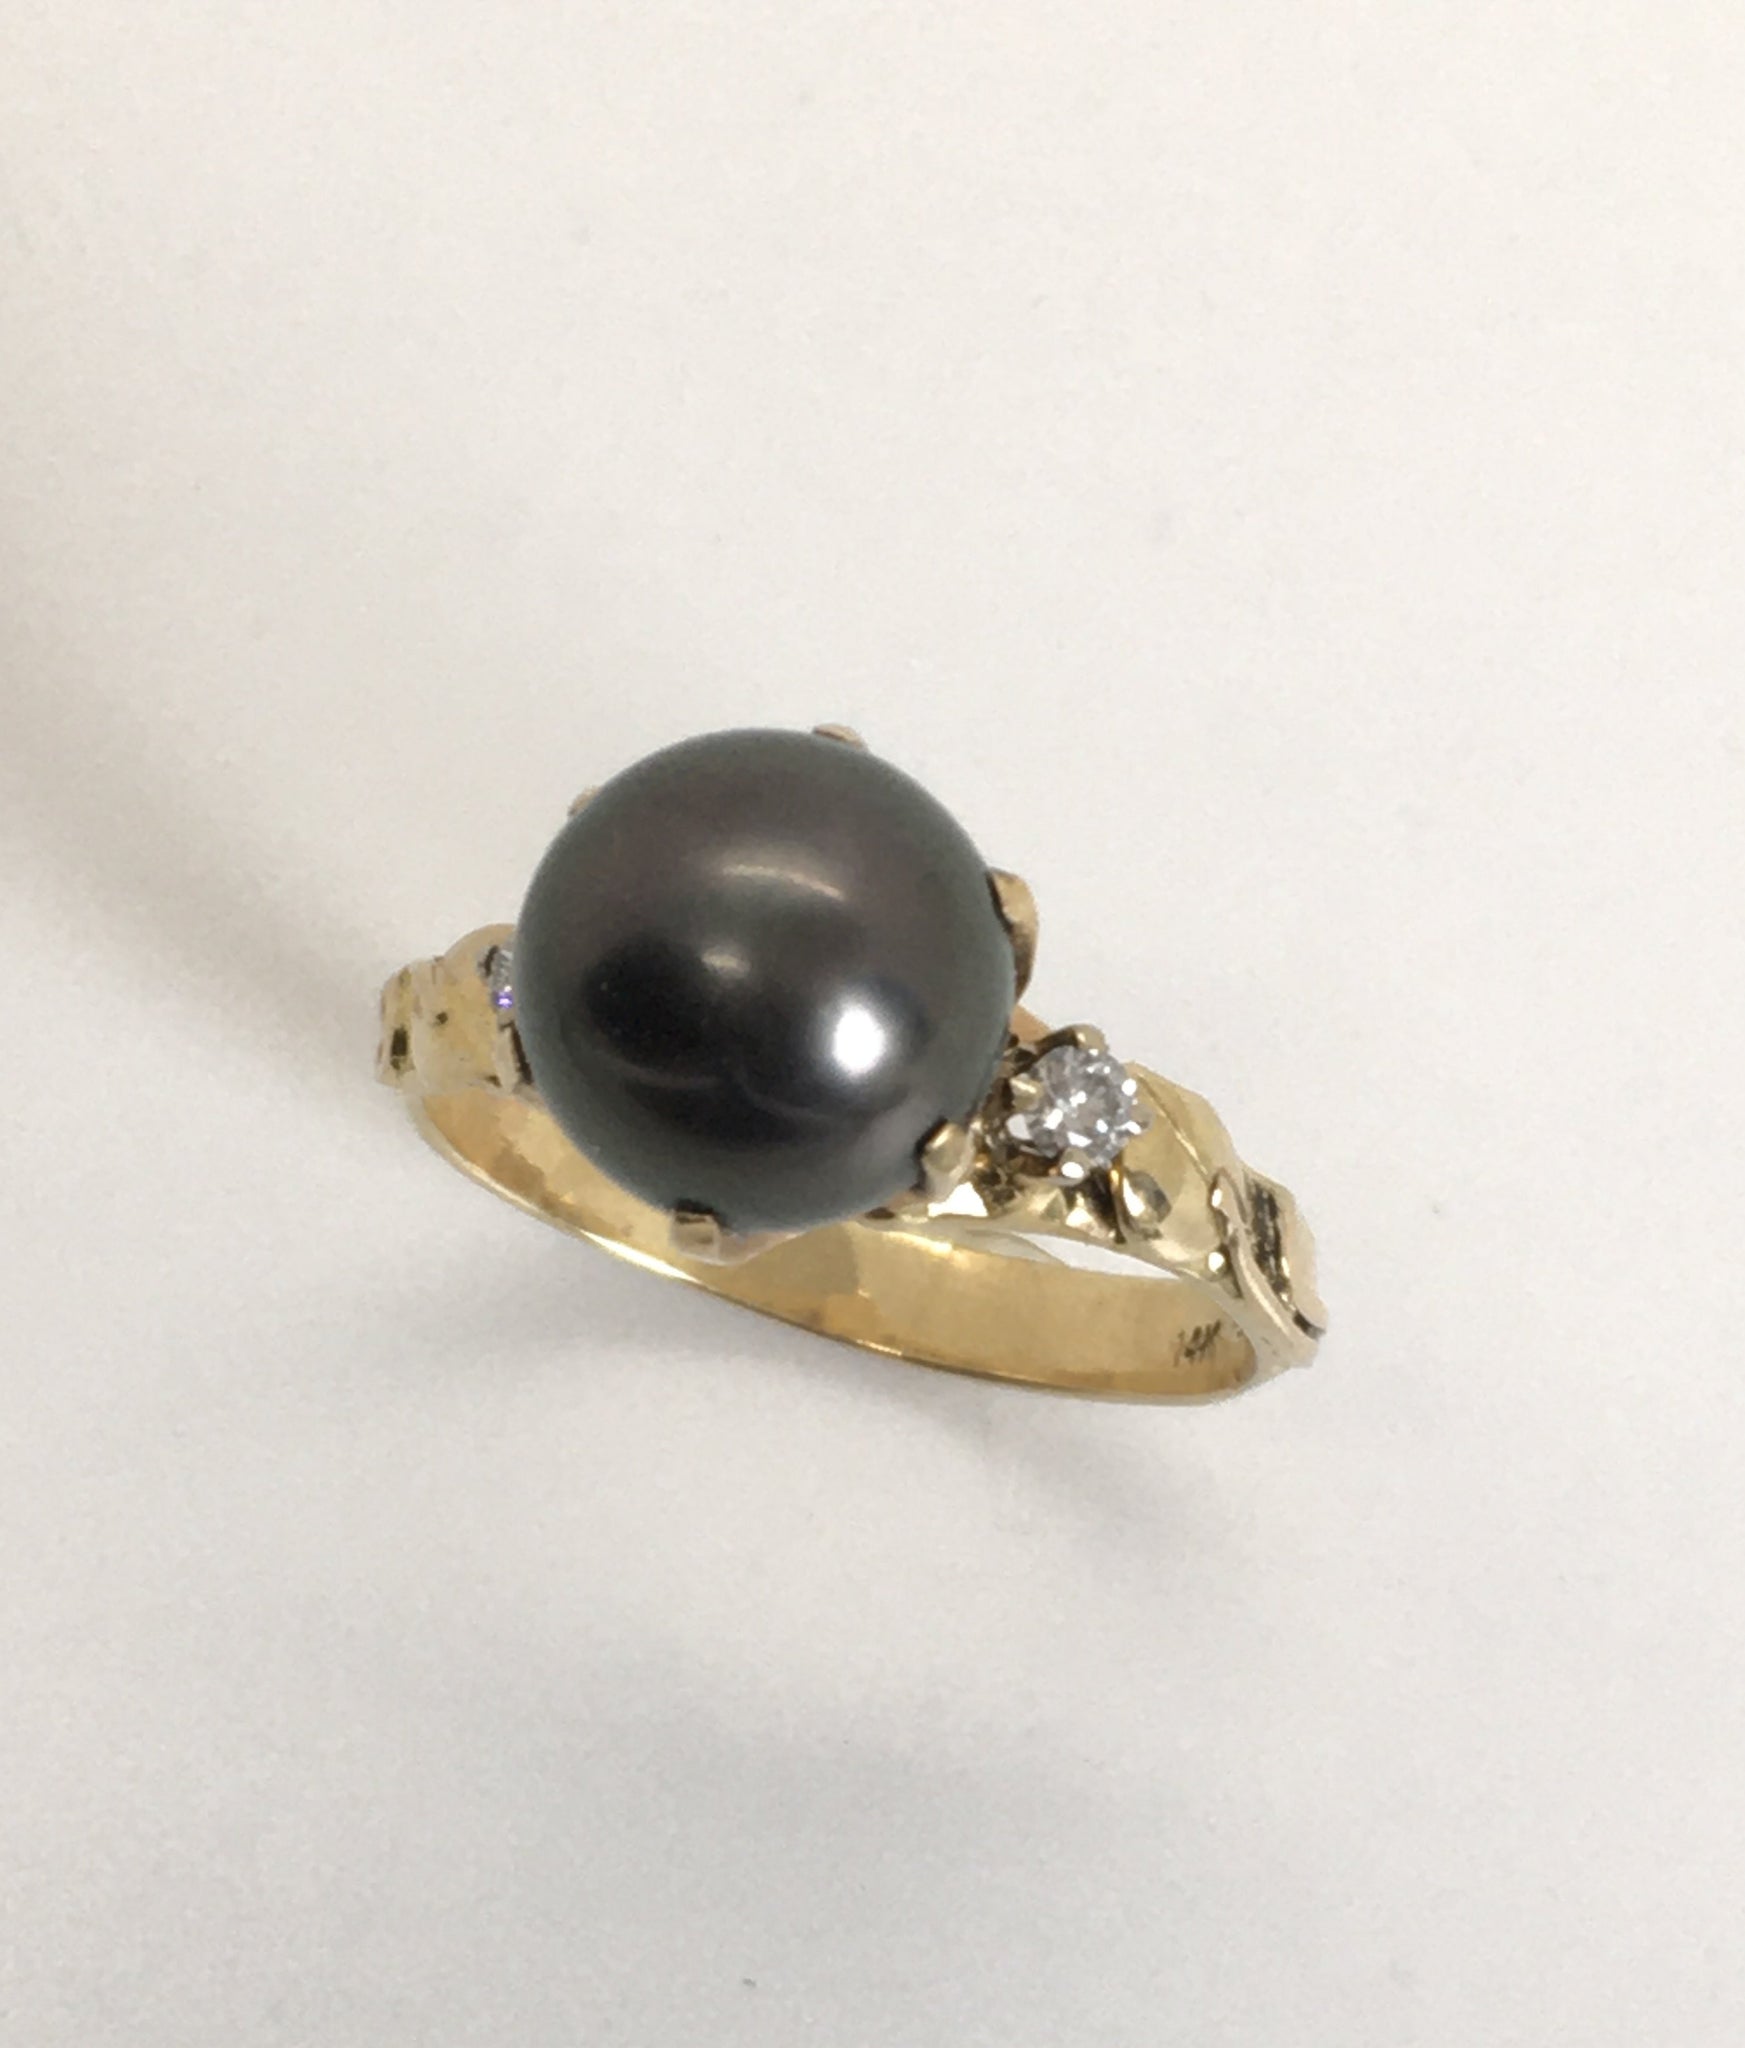 Tahitian pearl ring - 18K white gold - RGYGPE00028 – Tahiti Pearl Market